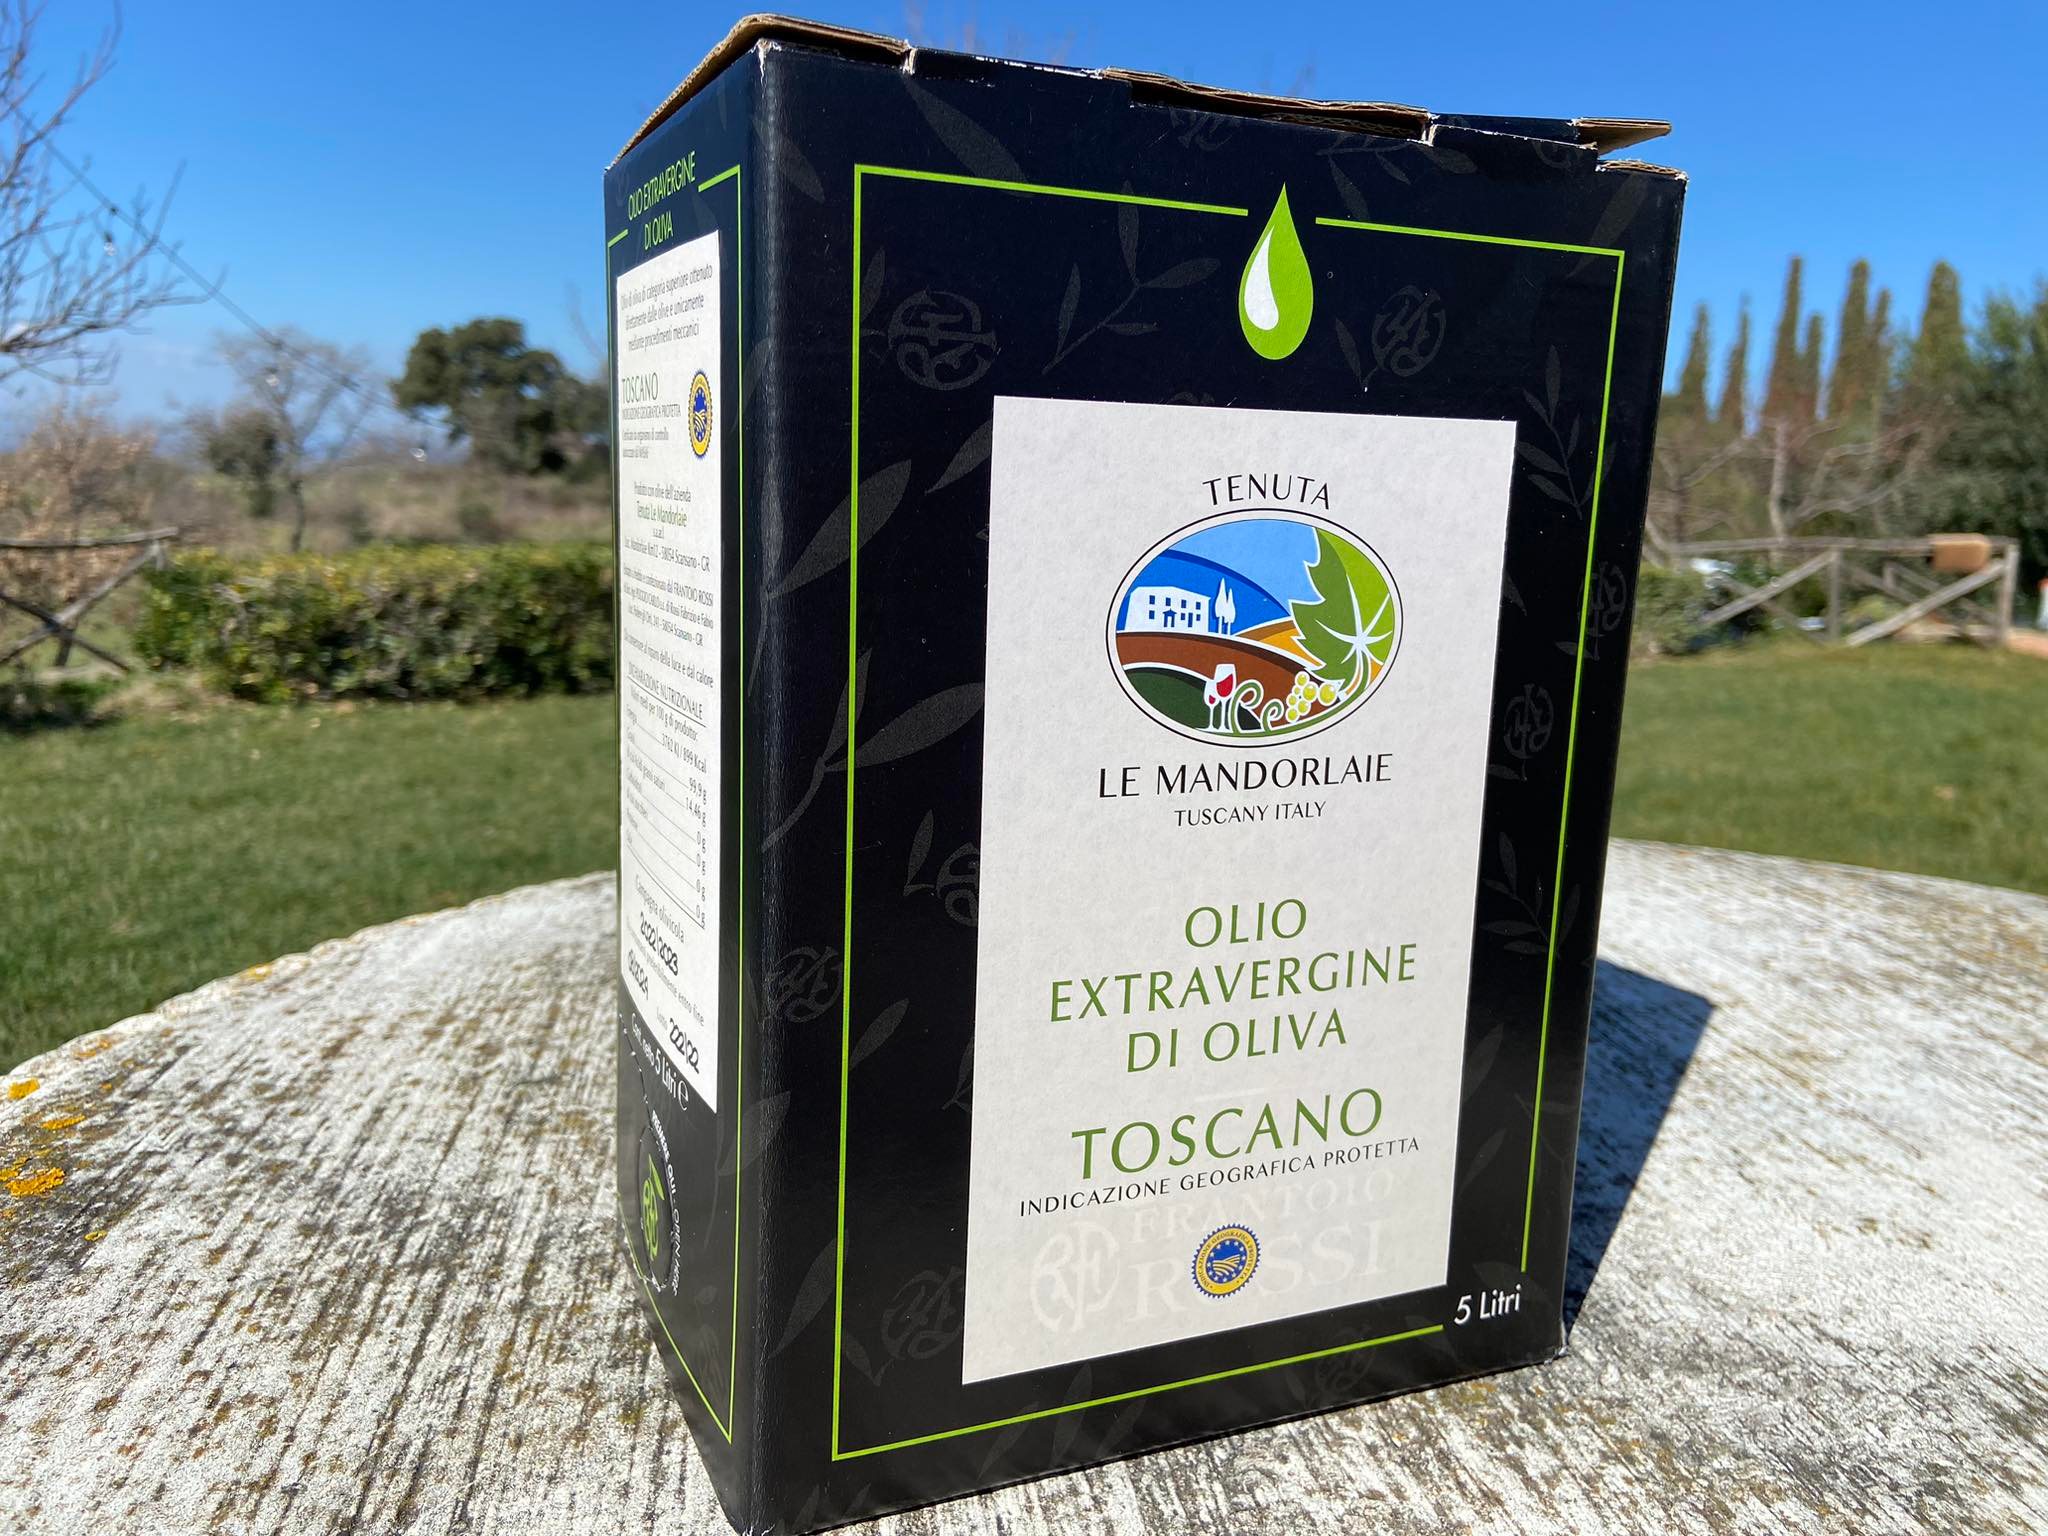 5 litre extra virgin olive oil toscana